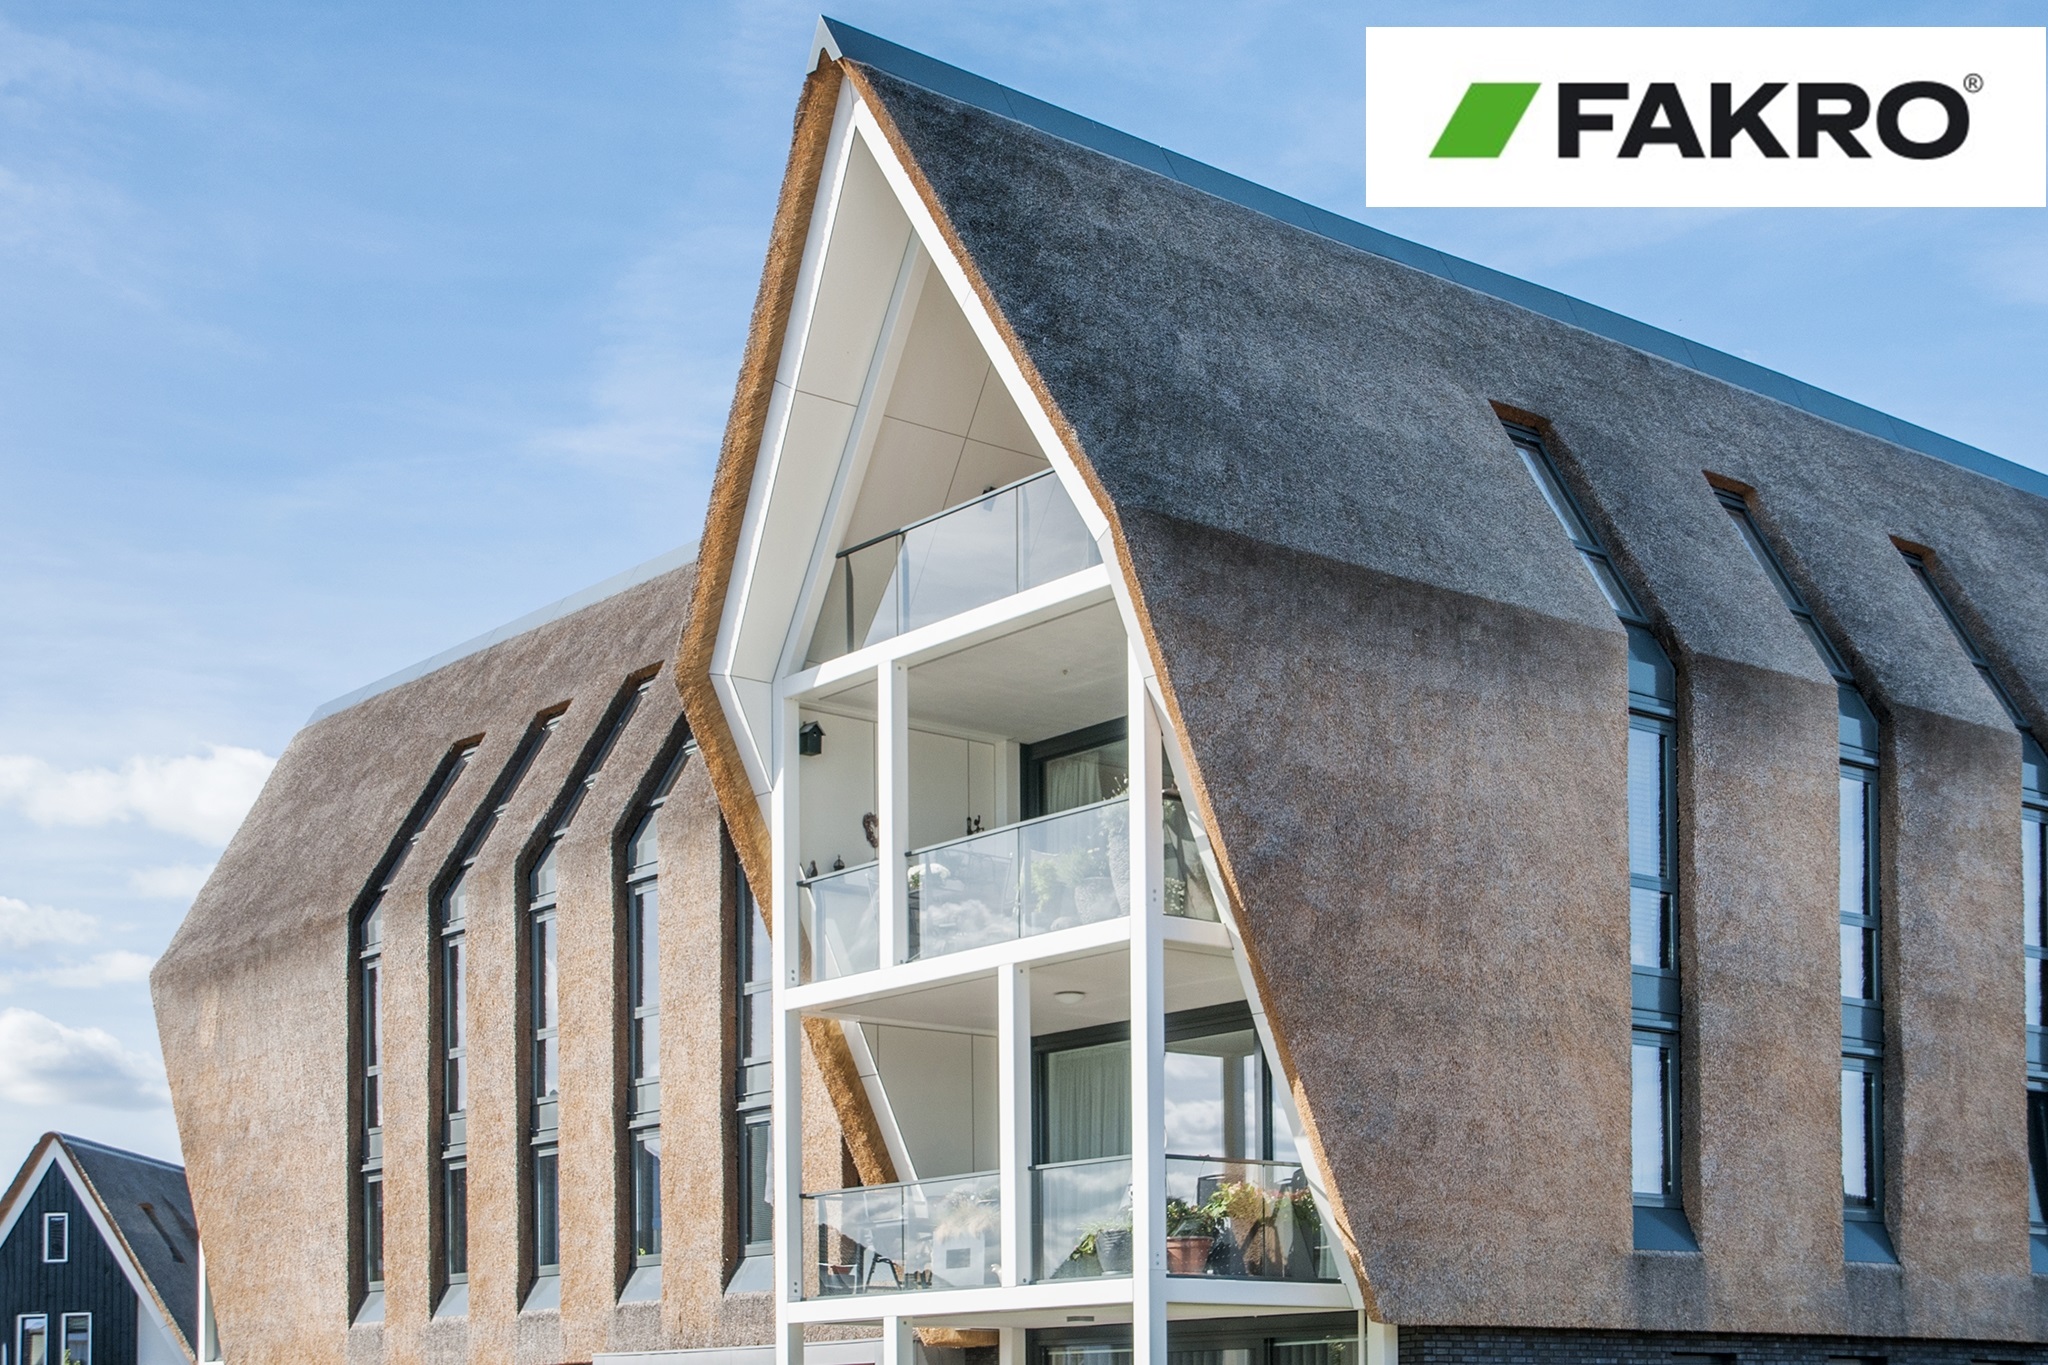 Fakro prezinta un alt proiect realizat cu succes in regiunea Blaricum din Olanda